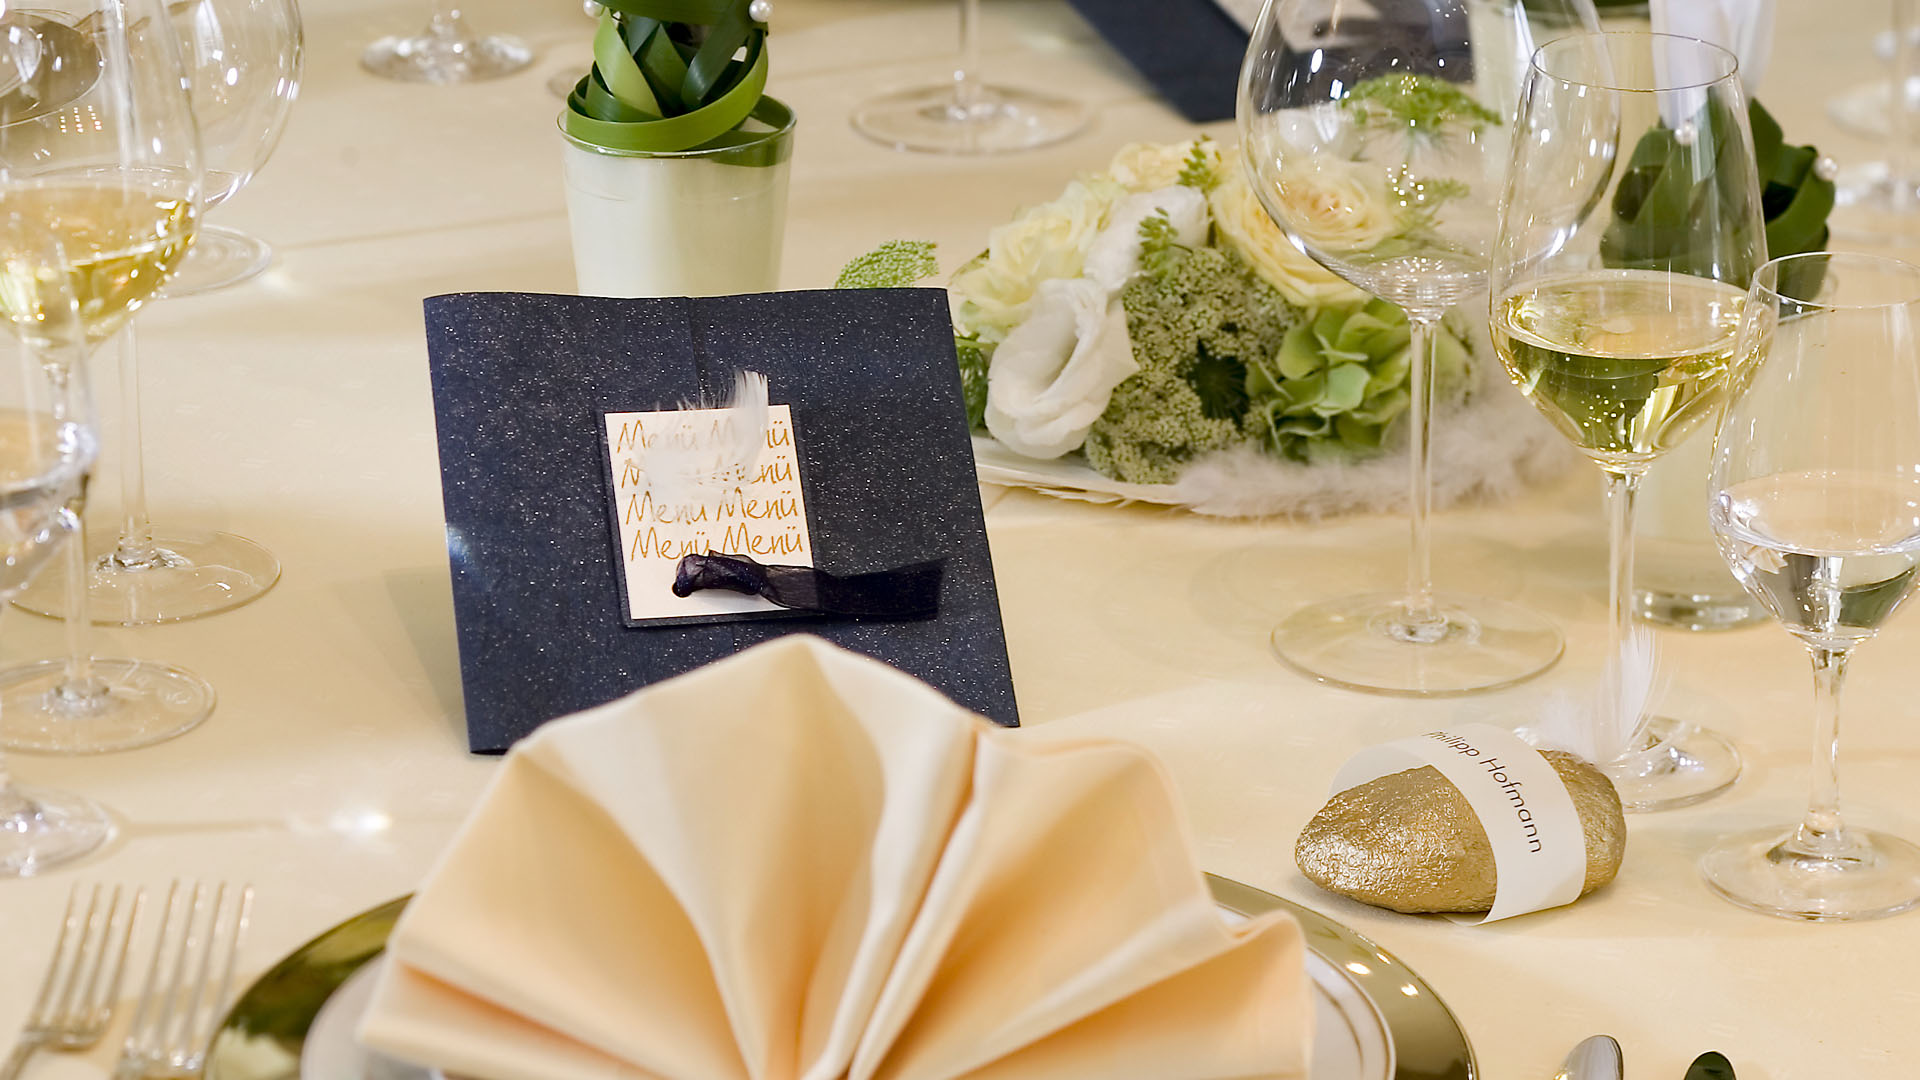 Ideen für Hochzeiten: Liebe federleicht | Menükarte in Dunkelblau, Champagner, Gold und Weiß mit einer dekorativen Feder